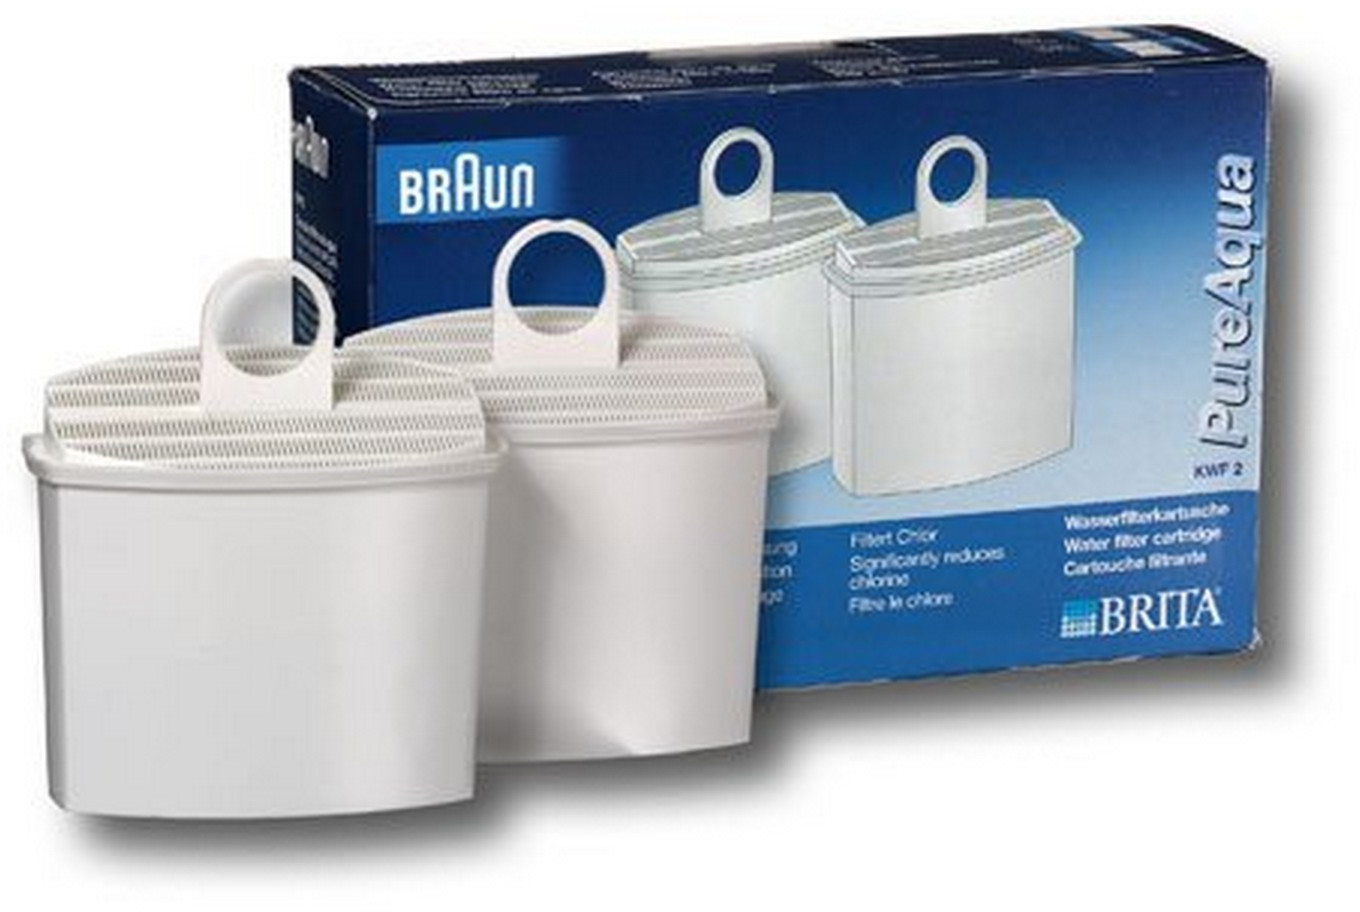 Filter package. Braun KWF 2 фильтр воды. Фильтр для воды Pure Aqua Braun. Фильтр воды для кофемашины Braun PUREAQUA KWF 2. Фильтрующий картридж.